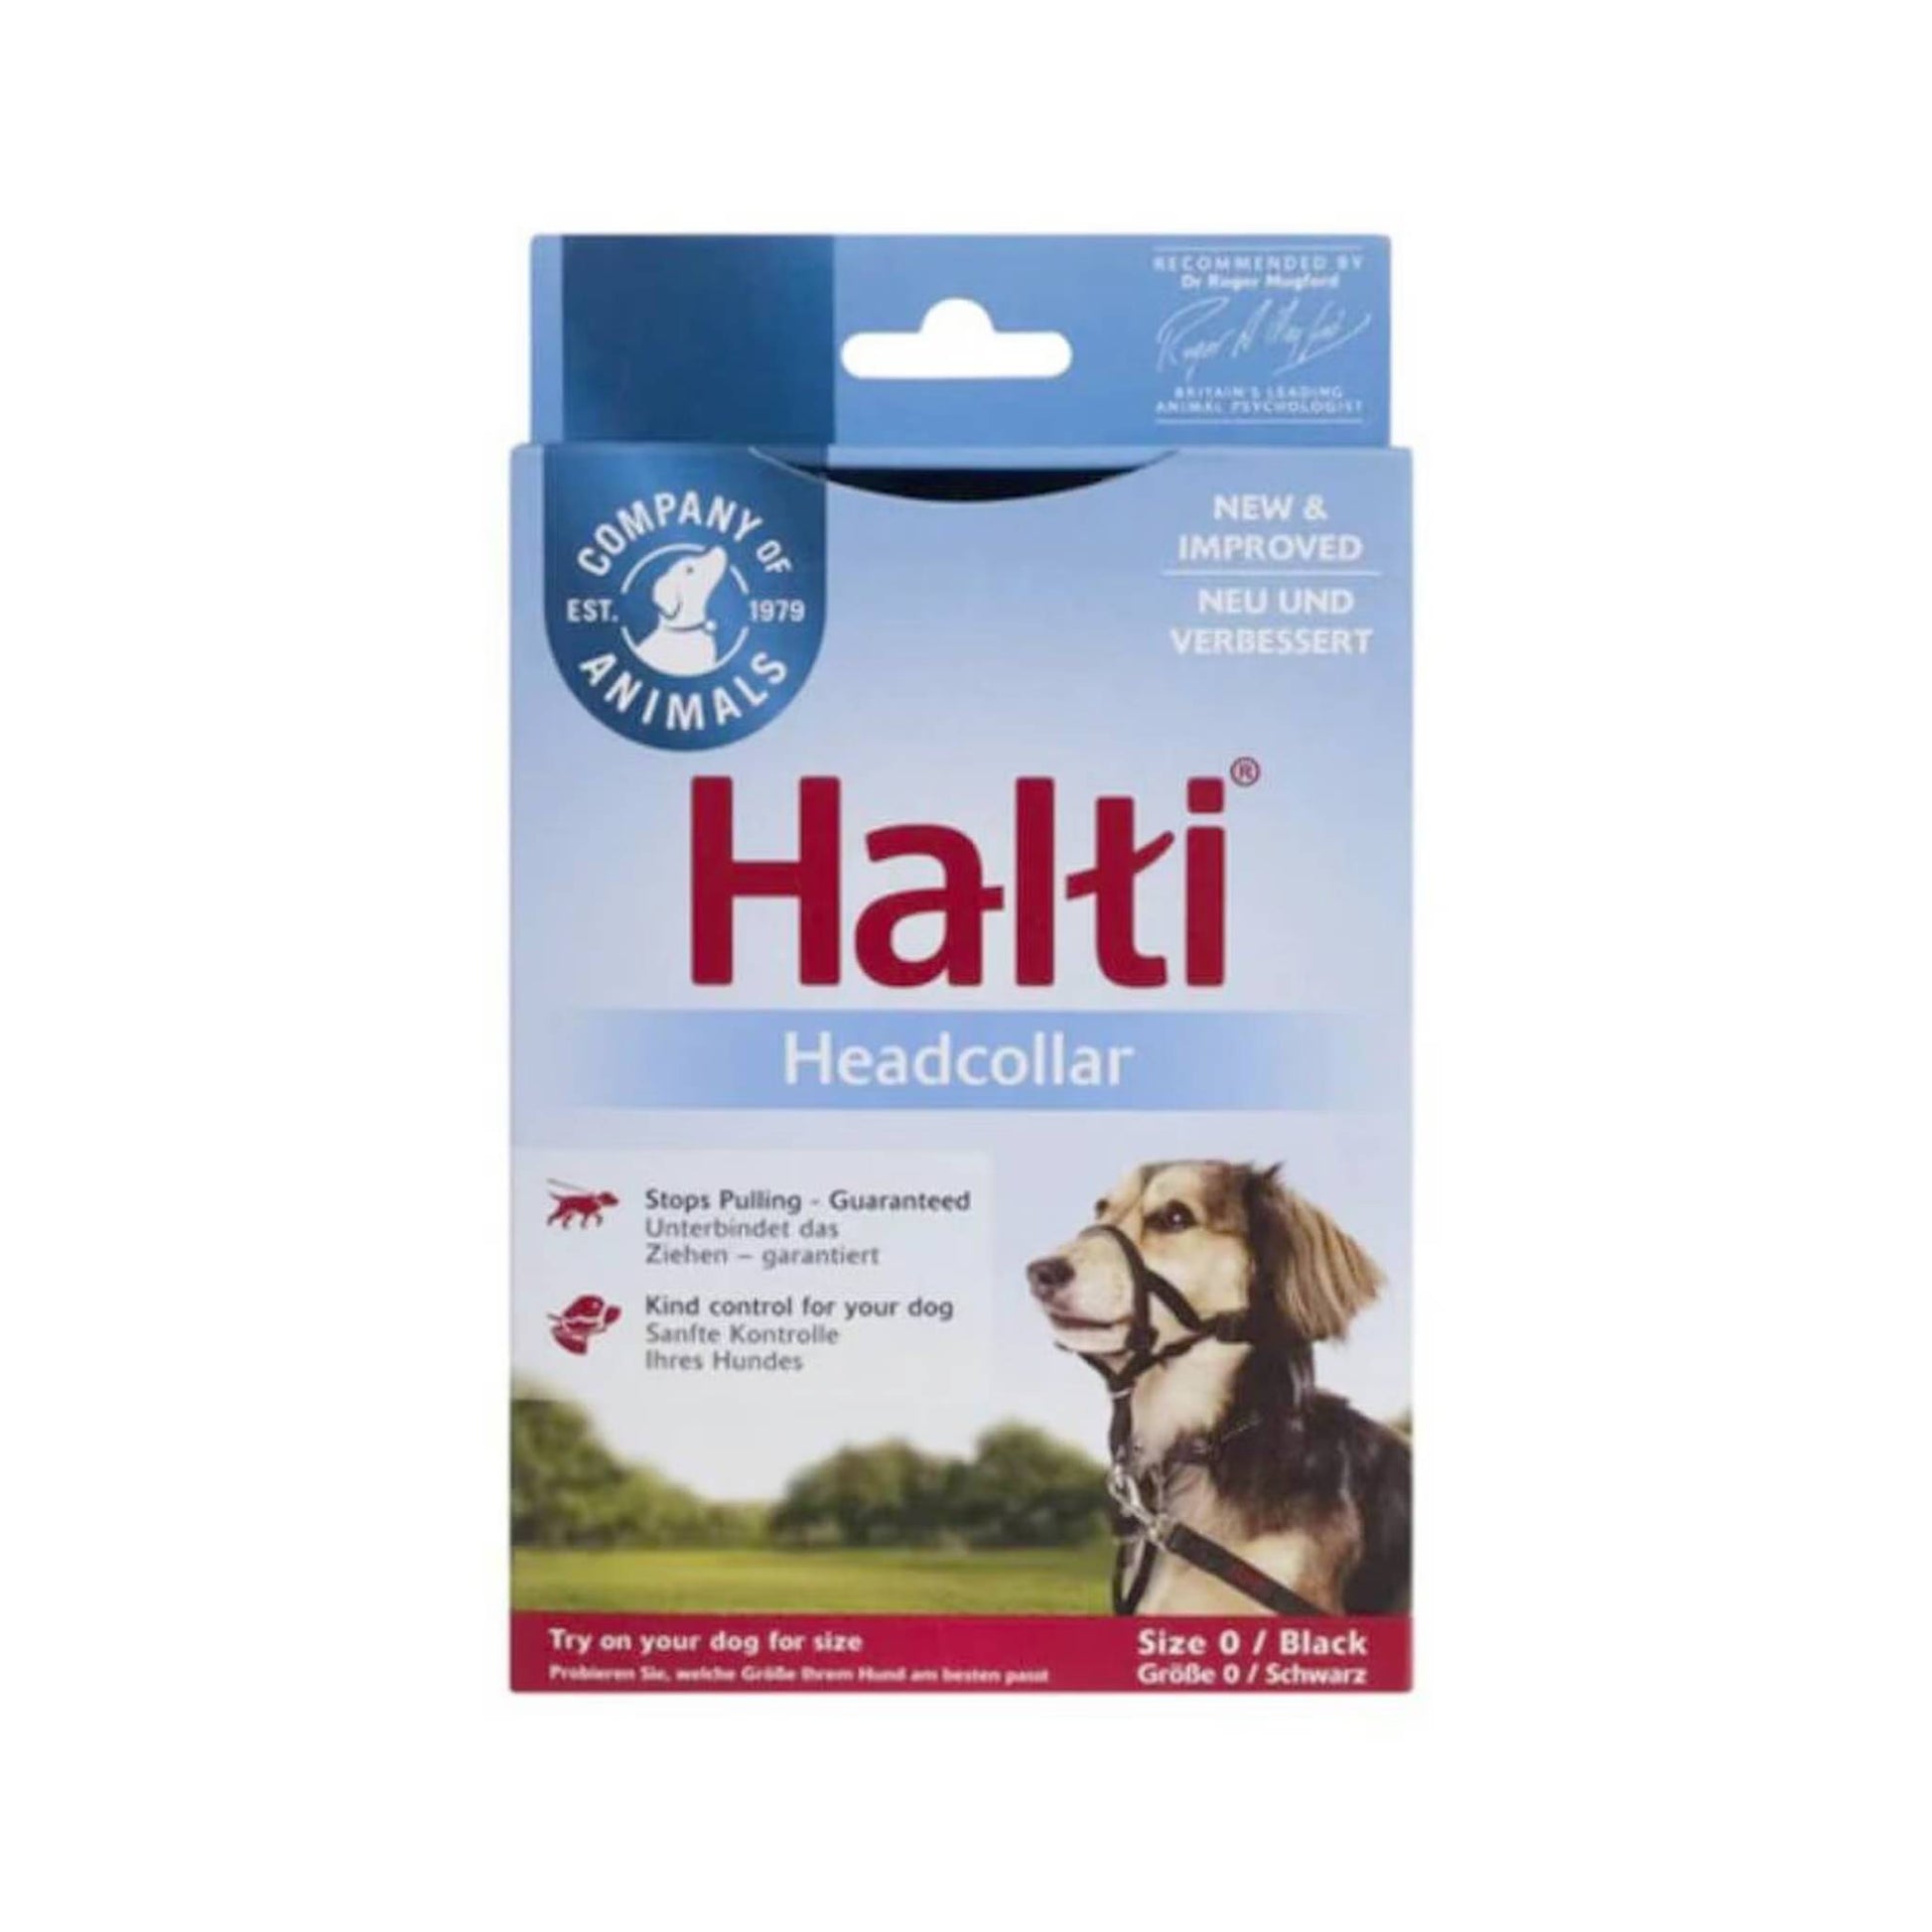 Halti headcollar for dogs size 0